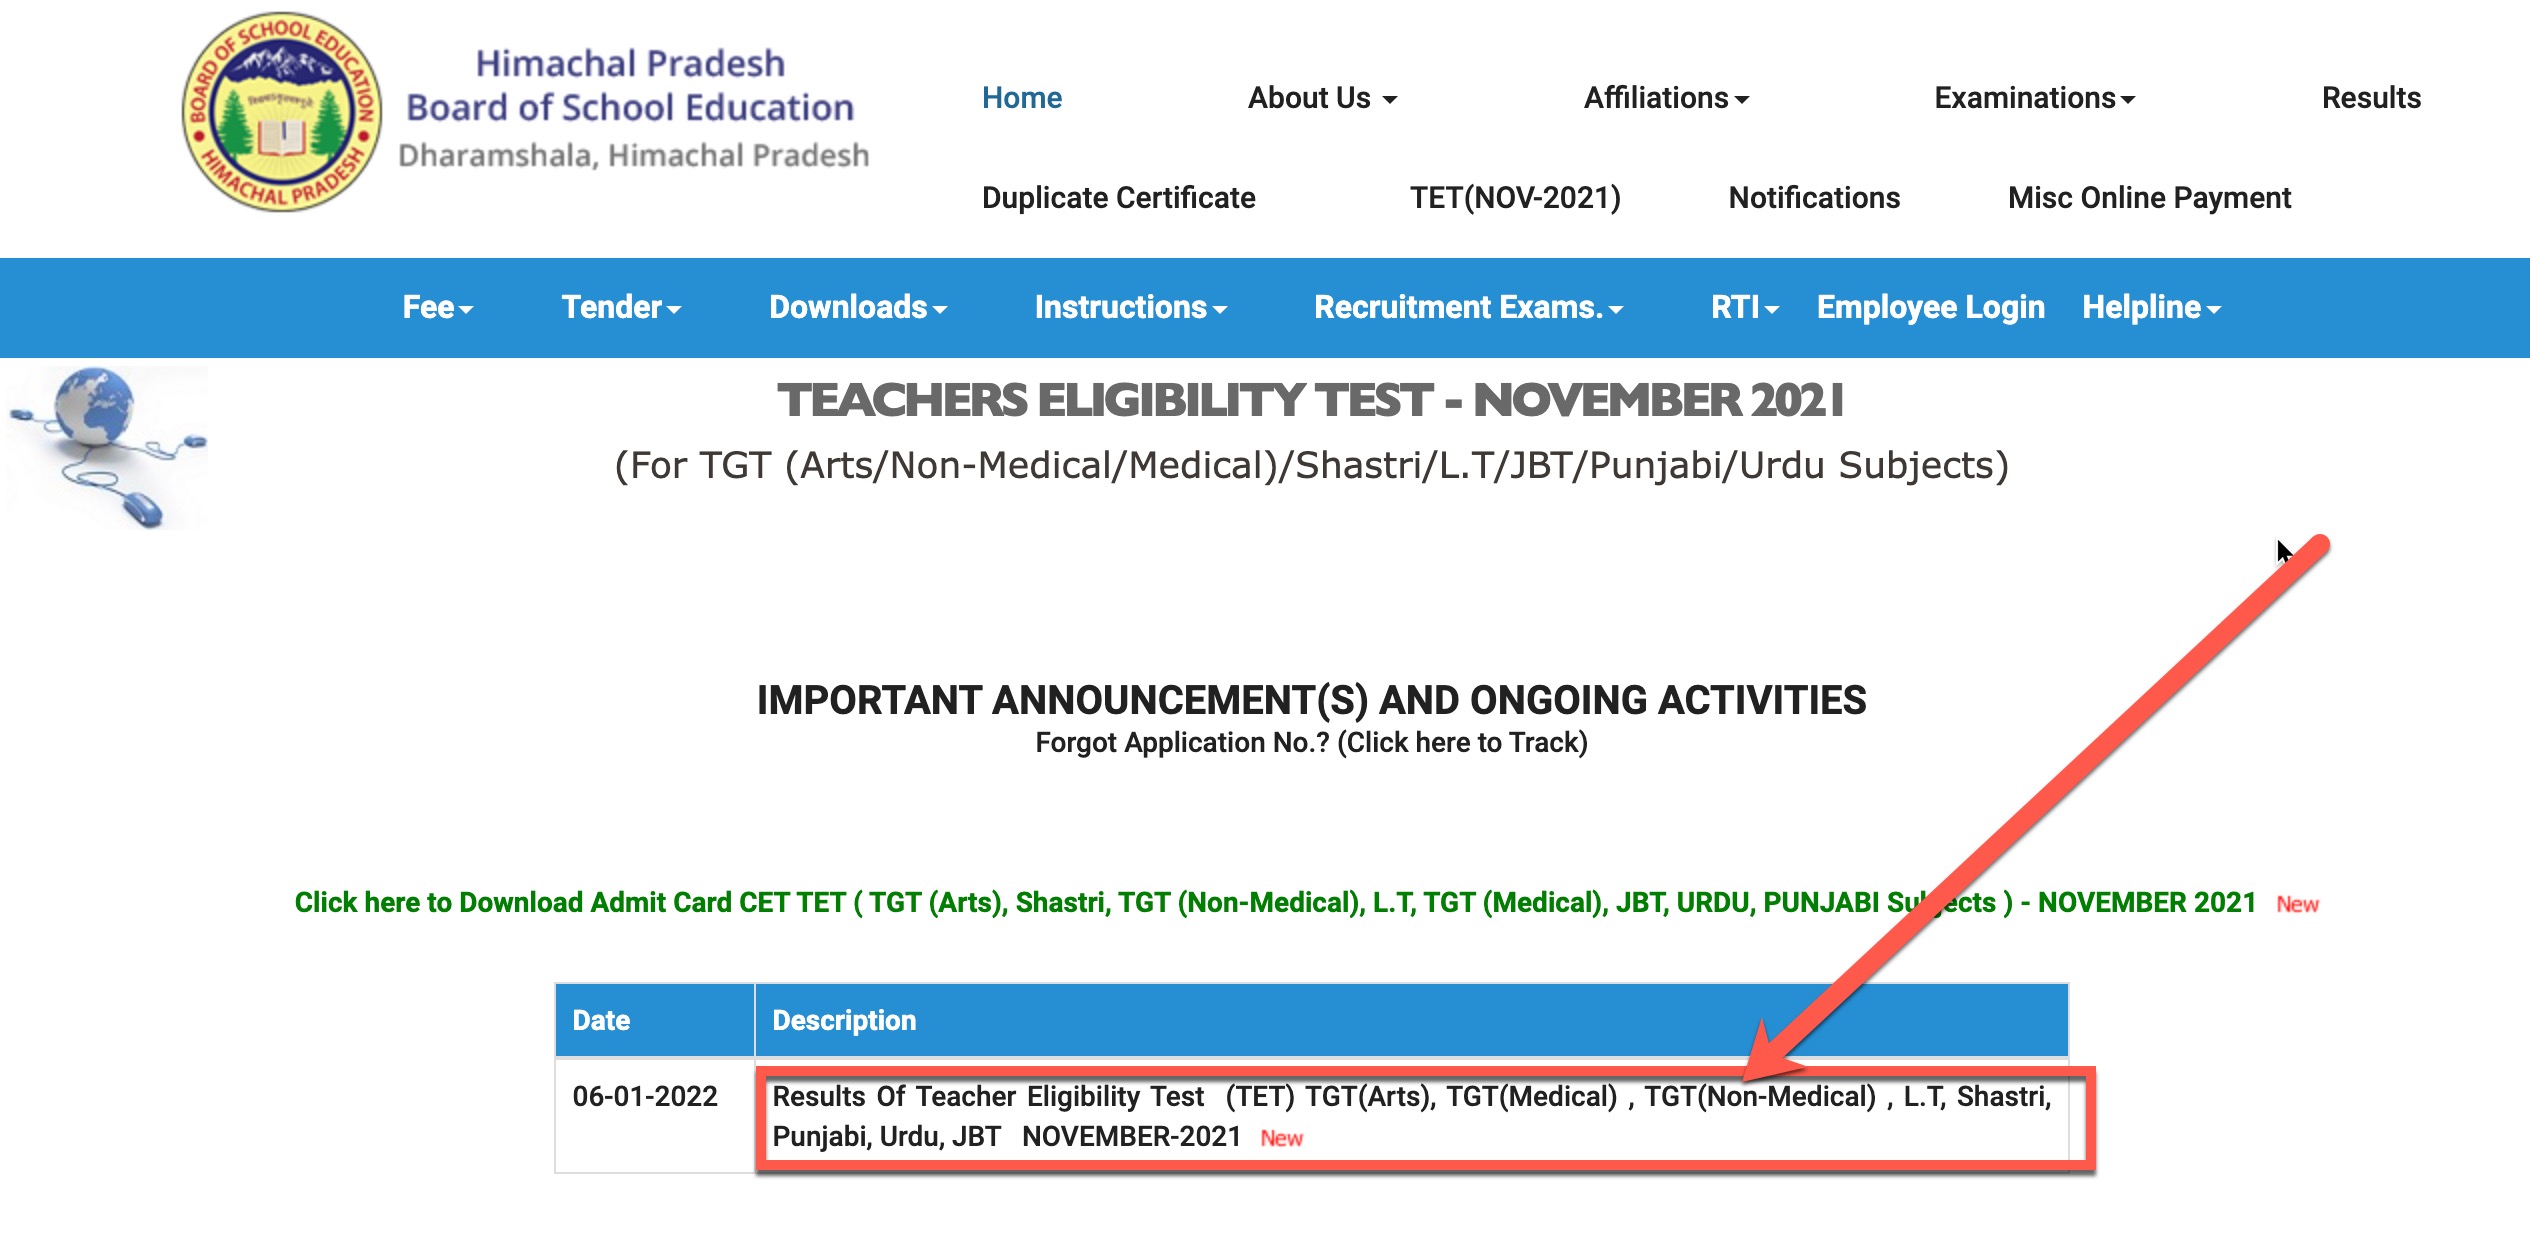 On the next page click on "Results Of Teacher Eligibility Test  (TET) TGT(Arts), TGT(Medical) , TGT(Non-Medical), L.T, Shastri, Punjabi, Urdu, JBT  NOVEMBER-2021"